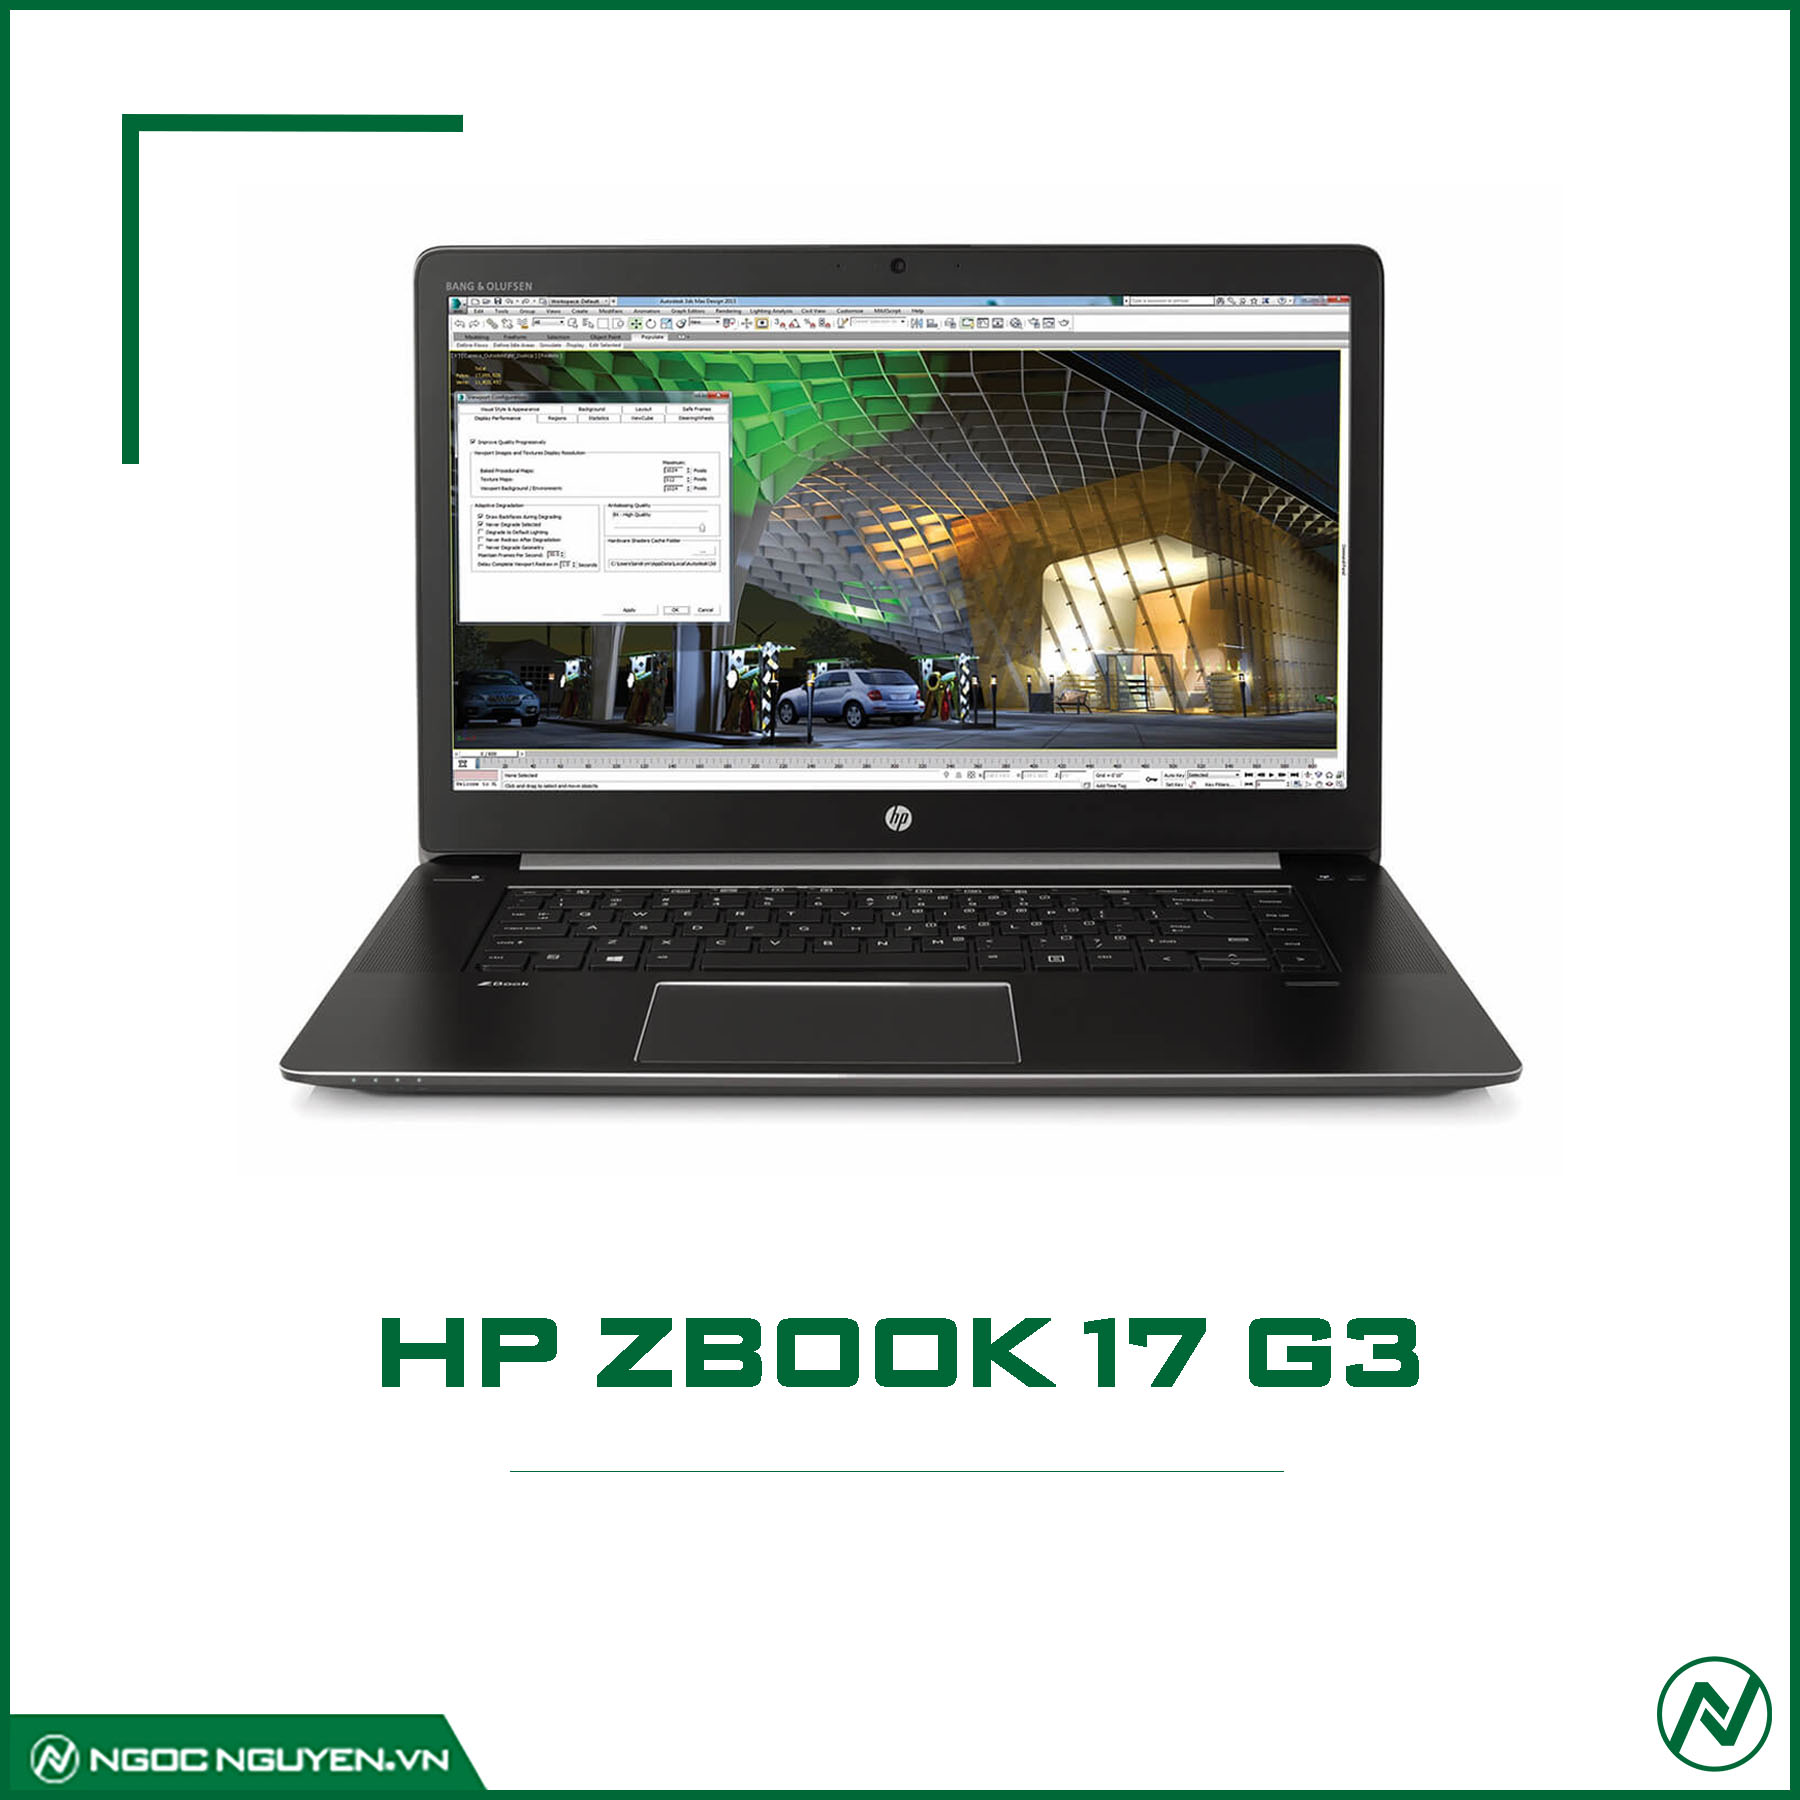 HP ZBook 17 G3 I7-6820HQ/ RAM 8GB/ SSD 256GB/ M1000M/ 17.3 INCH FHD